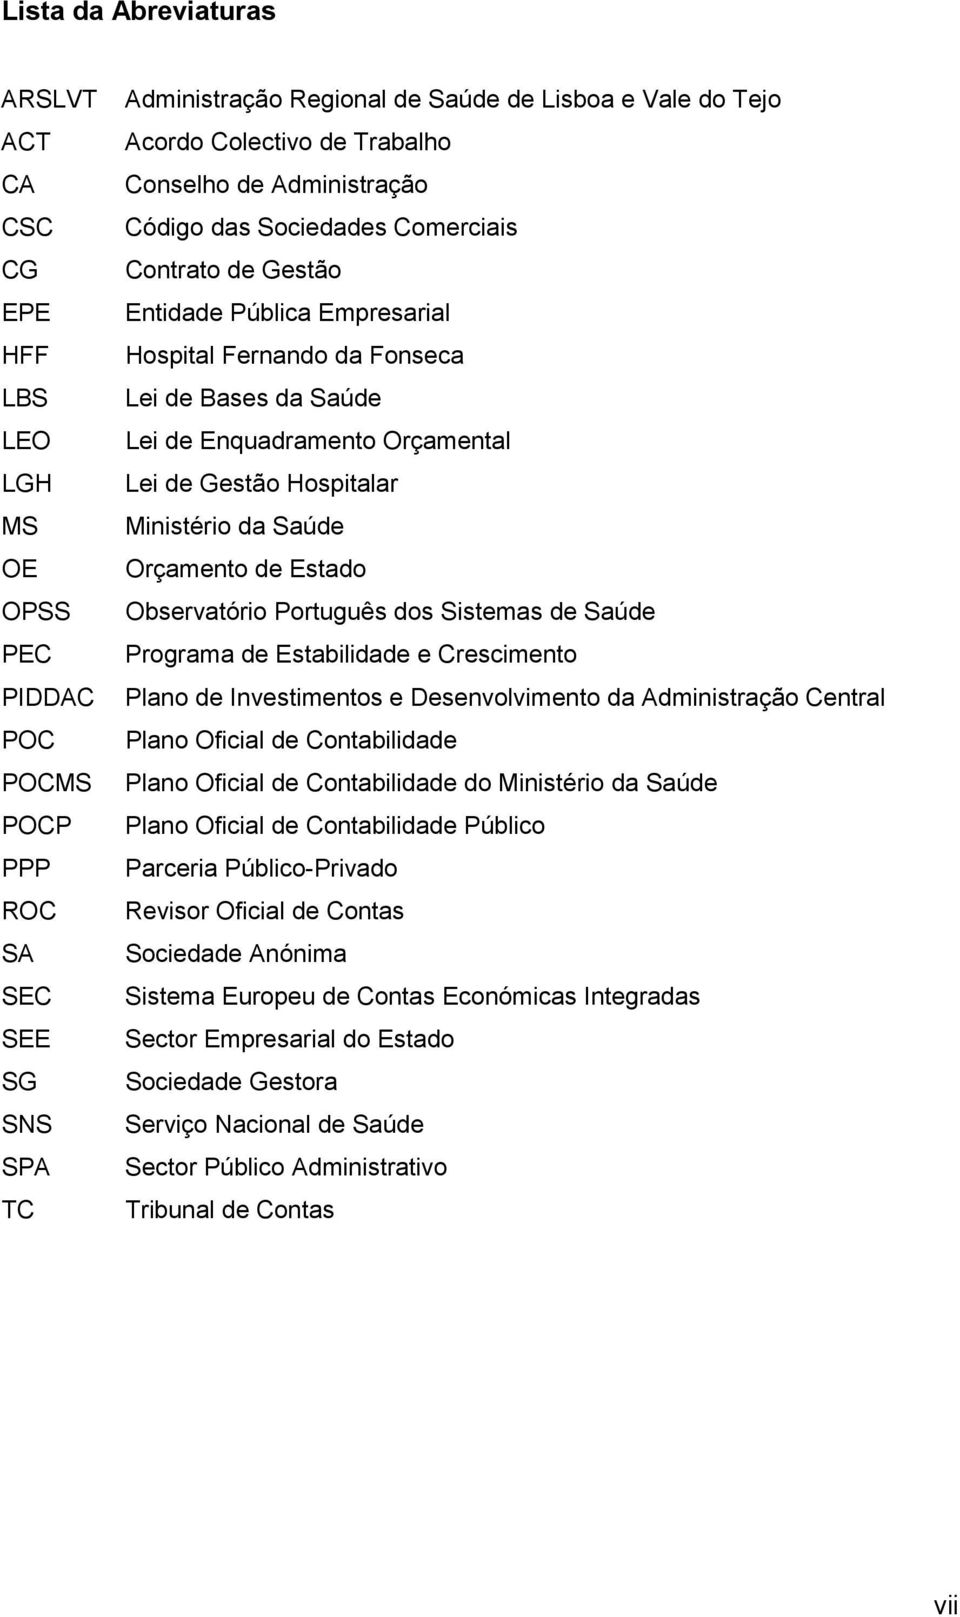 de Estado OPSS Observatório Português dos Sistemas de Saúde PEC Programa de Estabilidade e Crescimento PIDDAC Plano de Investimentos e Desenvolvimento da Administração Central POC Plano Oficial de